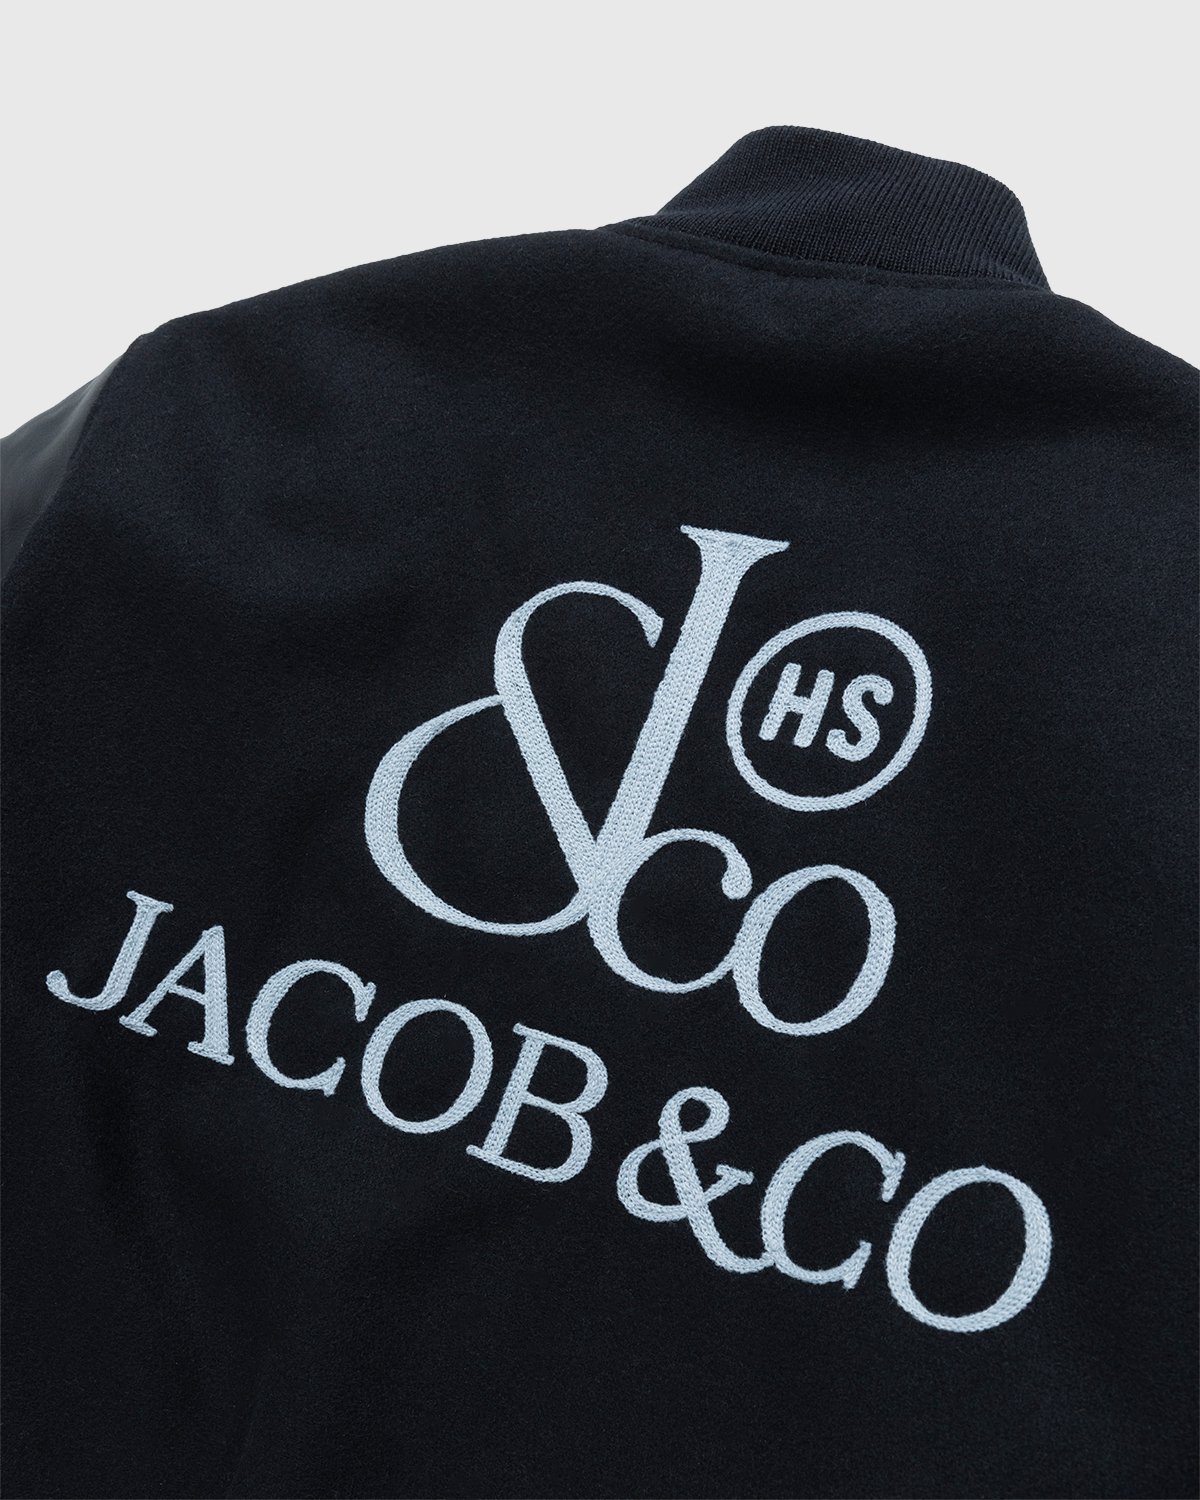 Jacob & Co. x Highsnobiety - Logo Varsity Jacket Black - Clothing - Black - Image 7